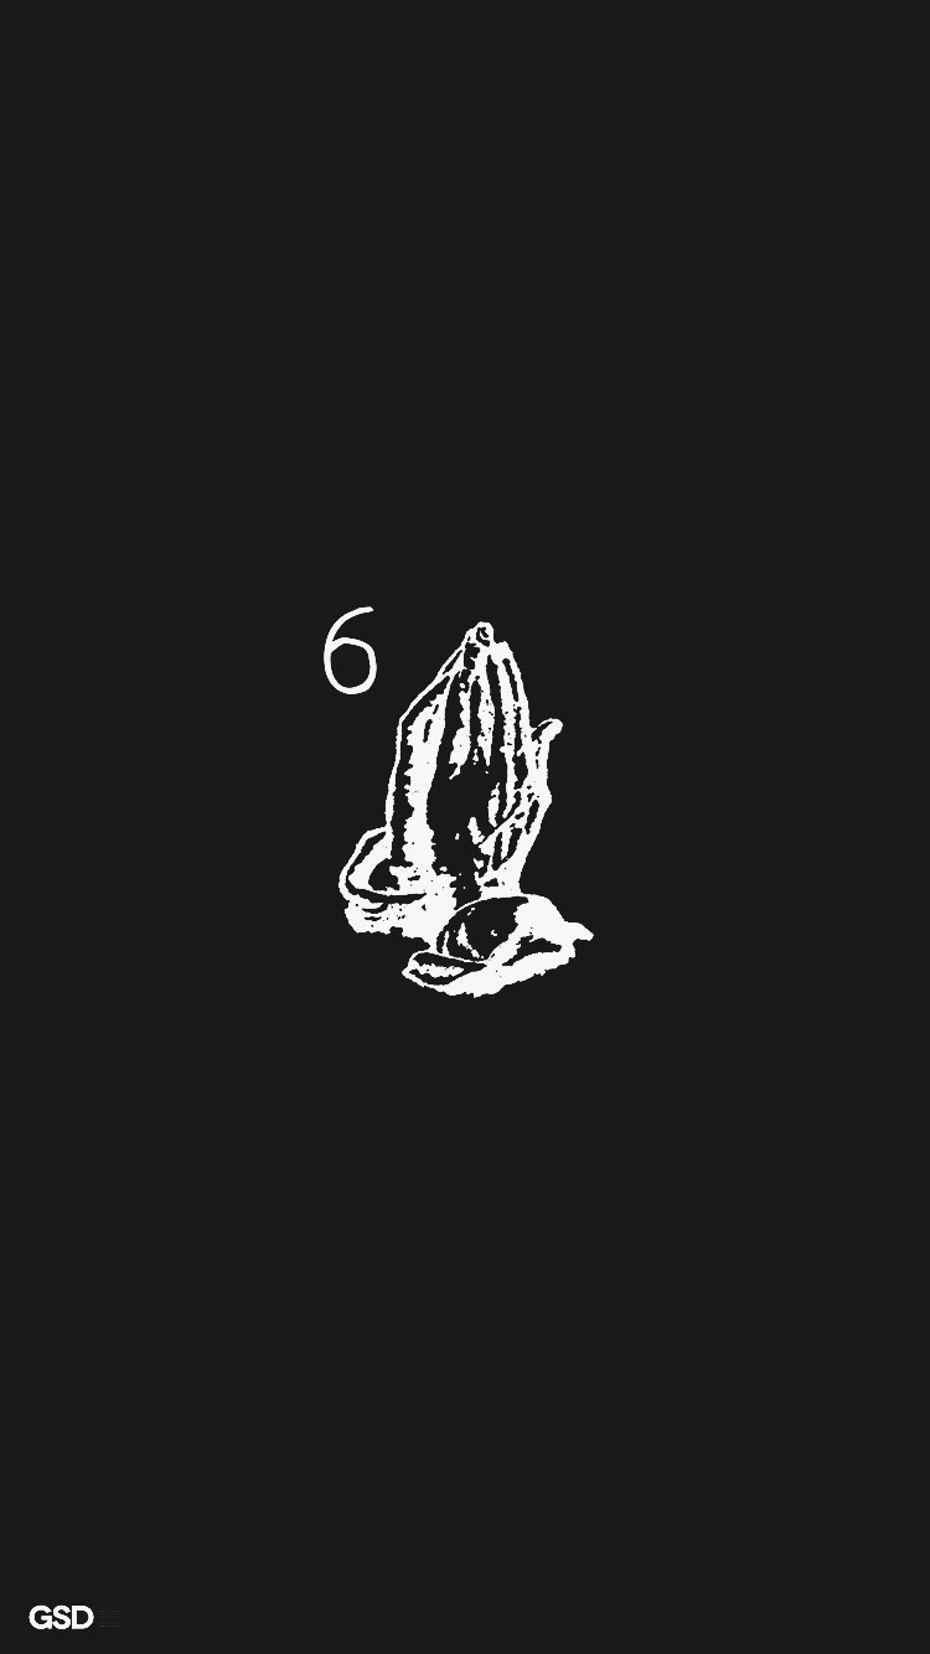 Drake Praying 6 God Wallpaper Free Drake Praying 6 God